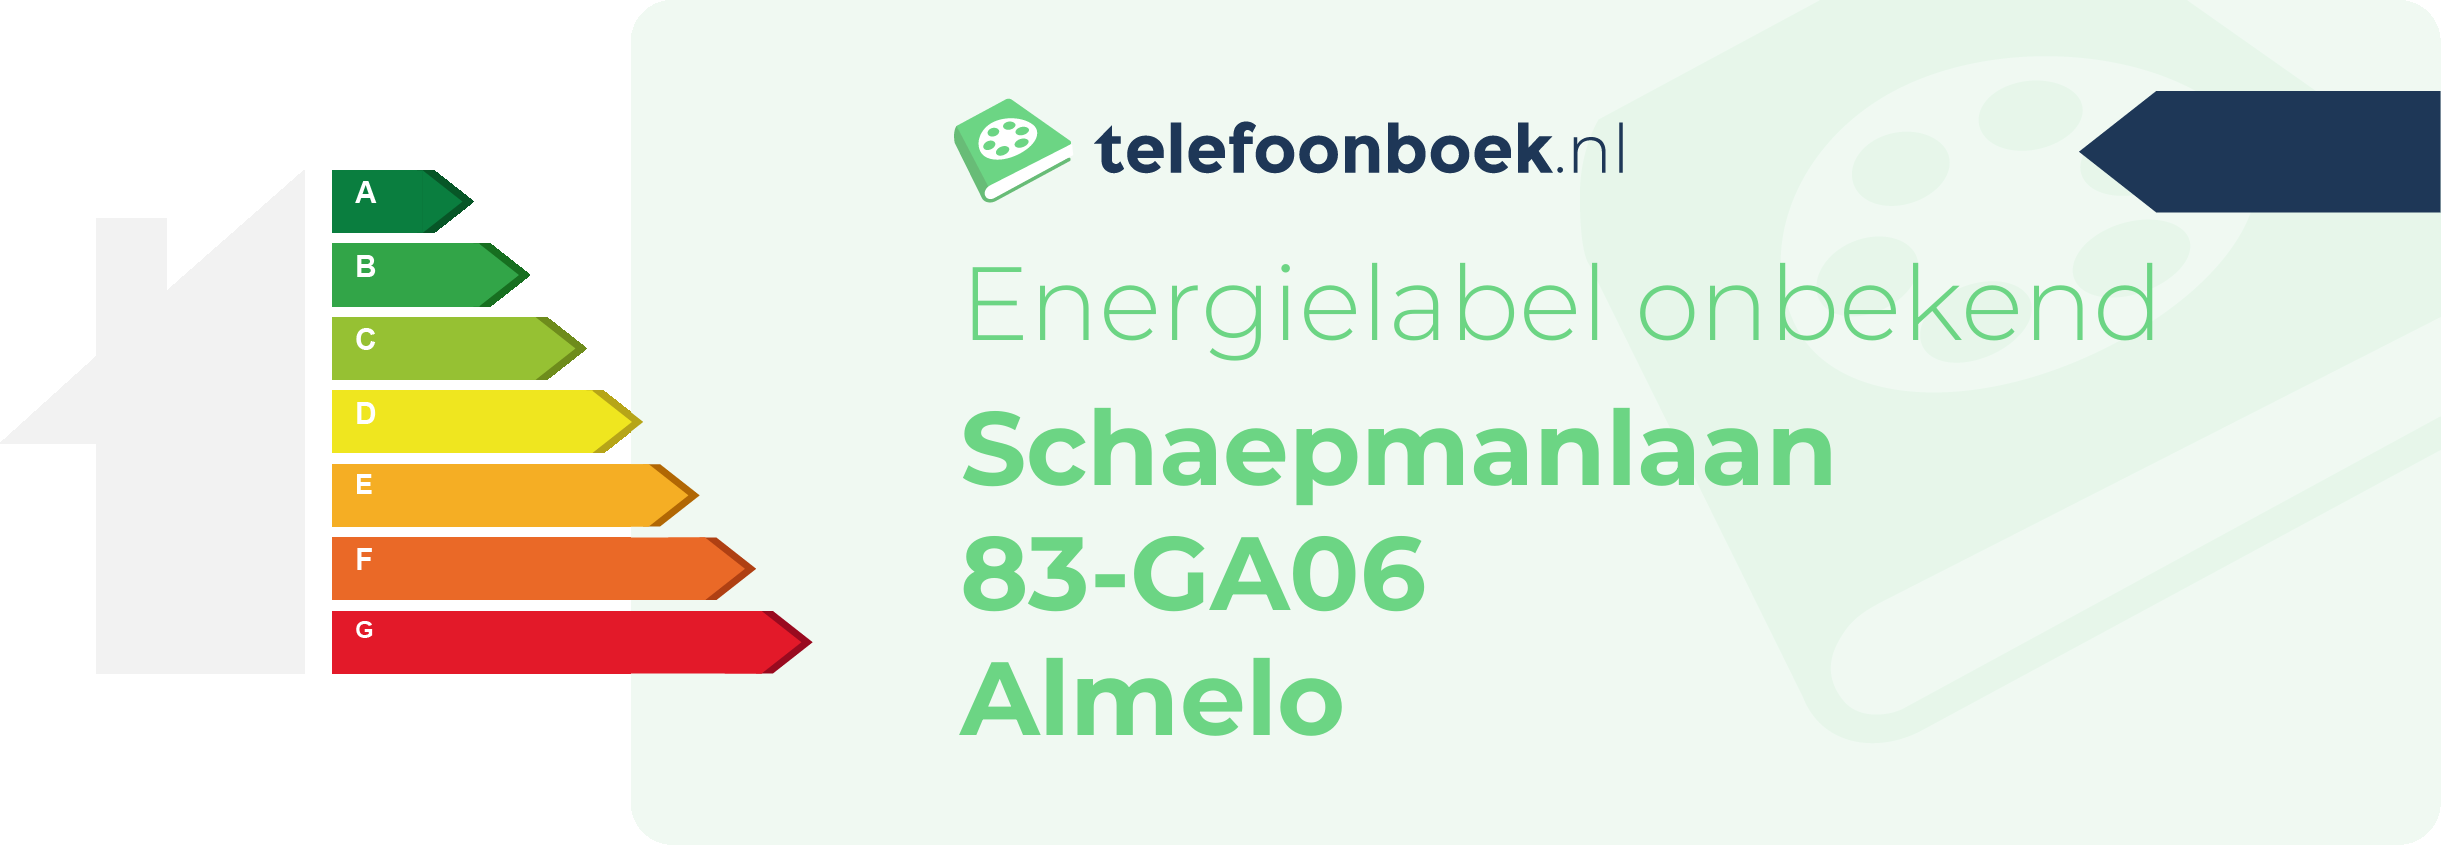 Energielabel Schaepmanlaan 83-GA06 Almelo